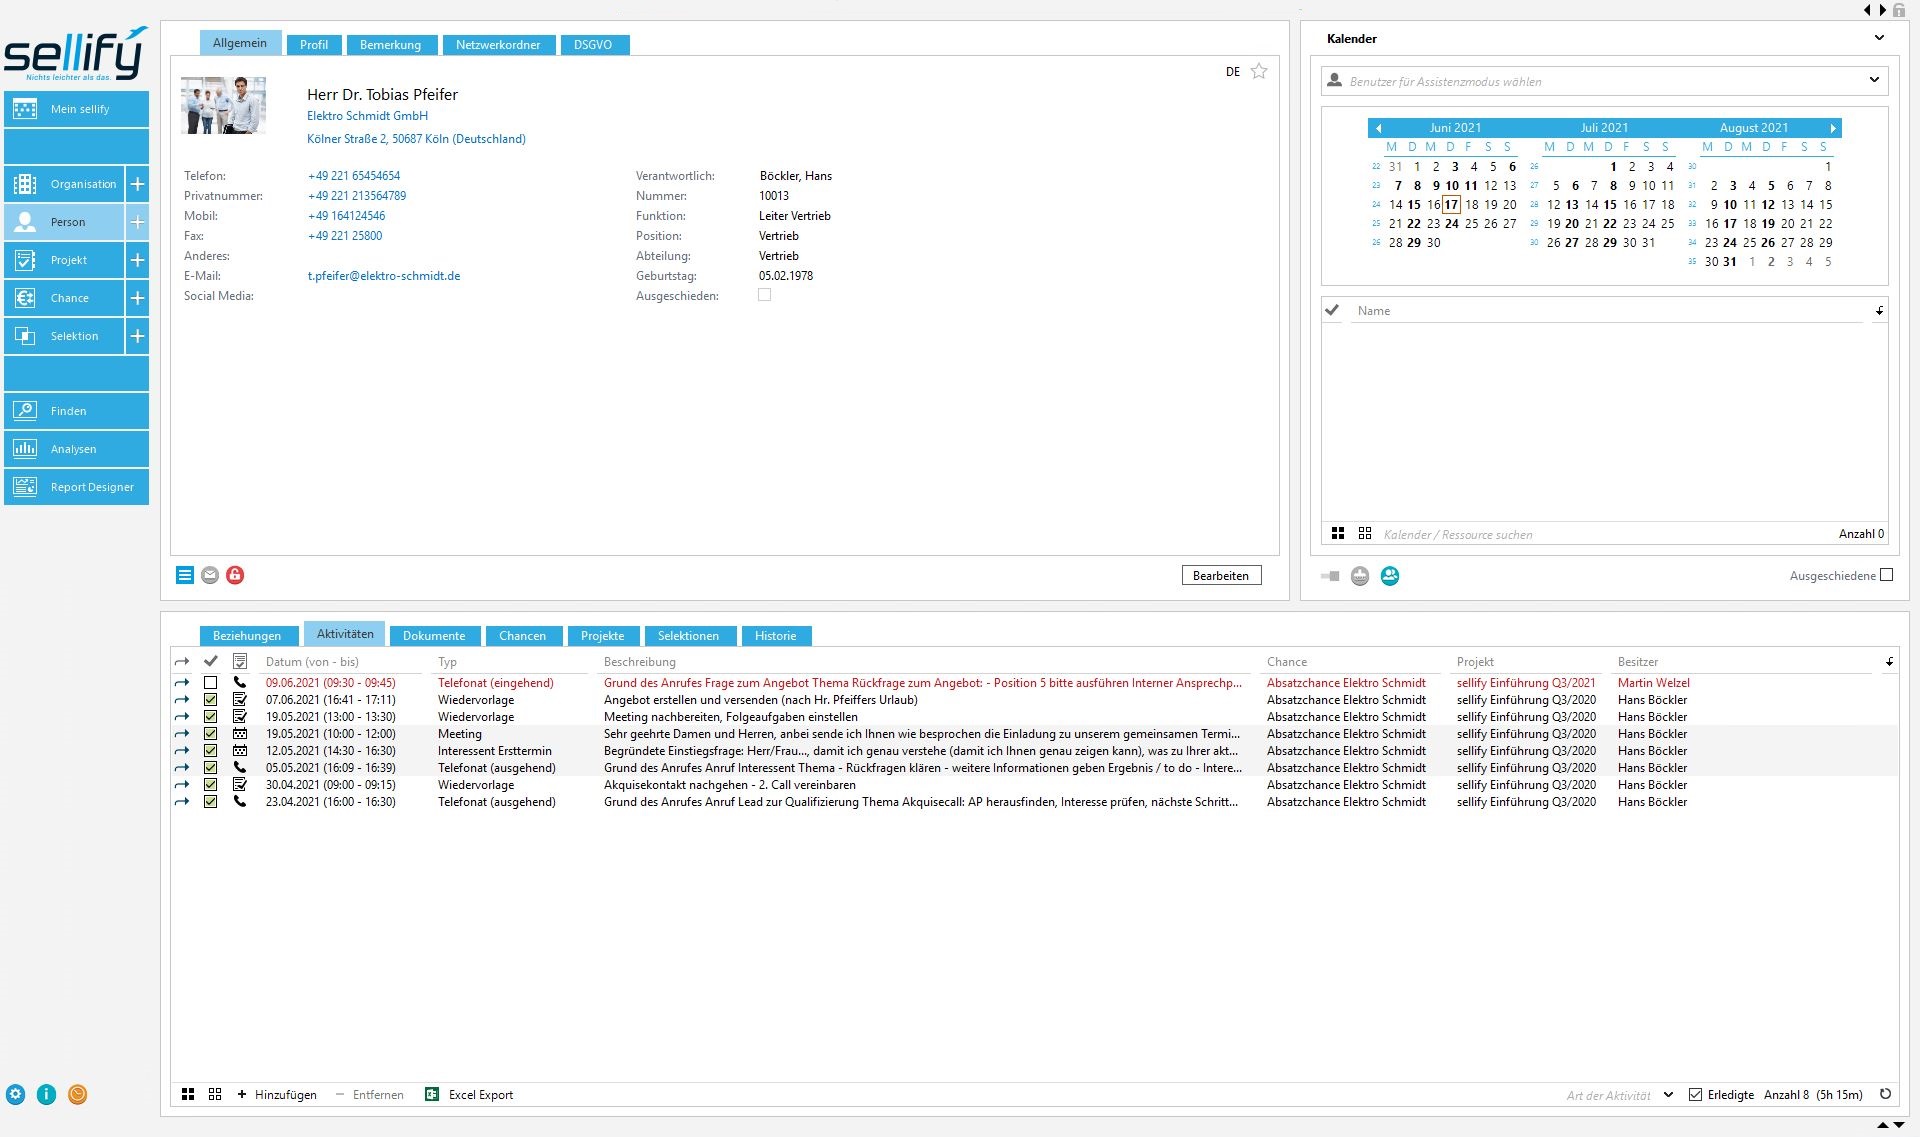 Das Bild zeigt einen Screenshot aus sellify zu einer Person mit Stammdaten und verknüpften Aktivitäten.